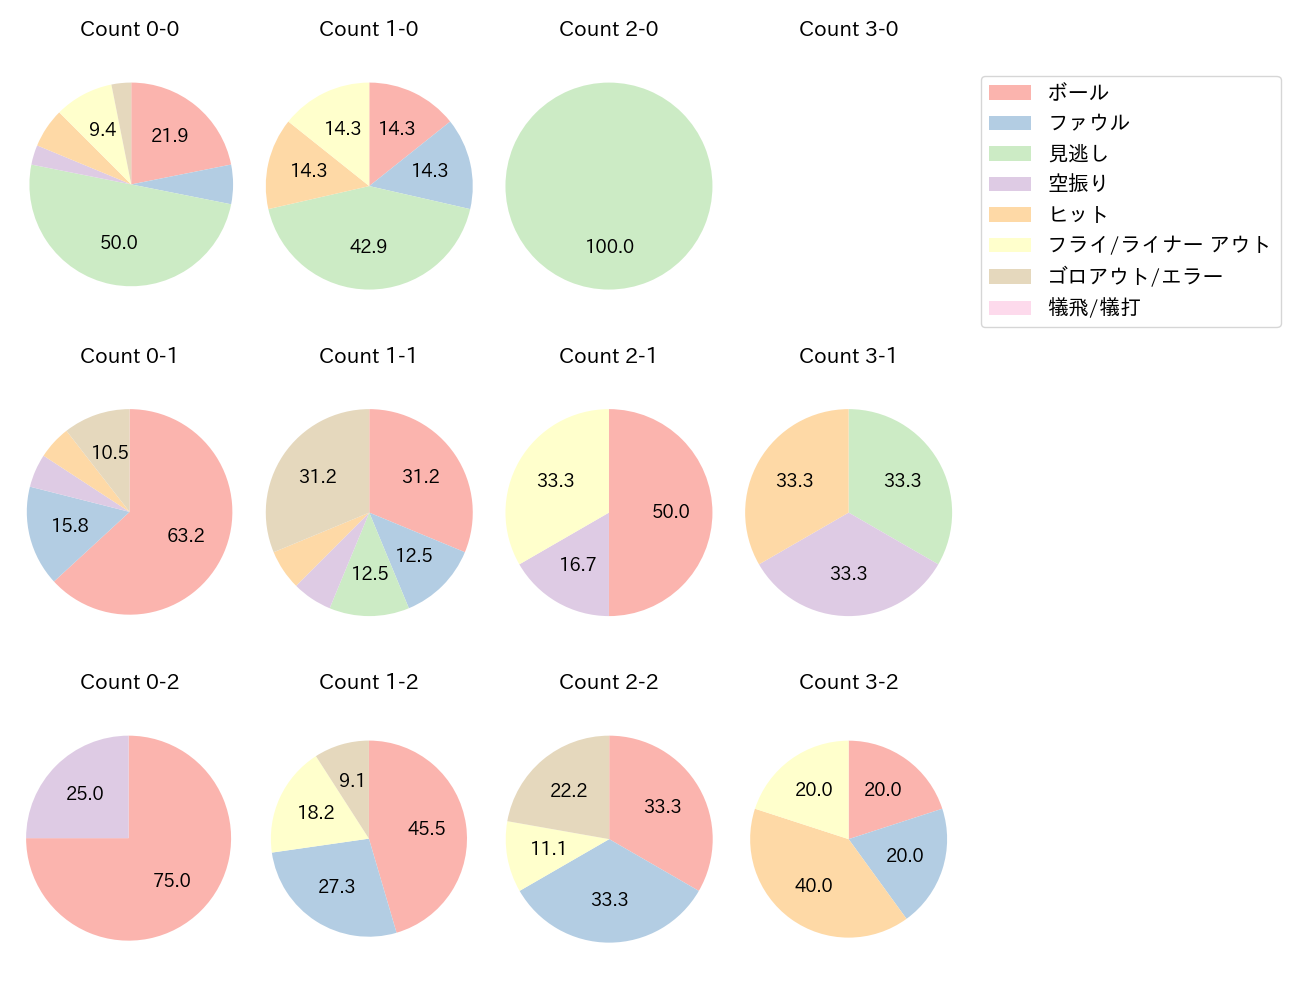 宗 佑磨の球数分布(2022年オープン戦)